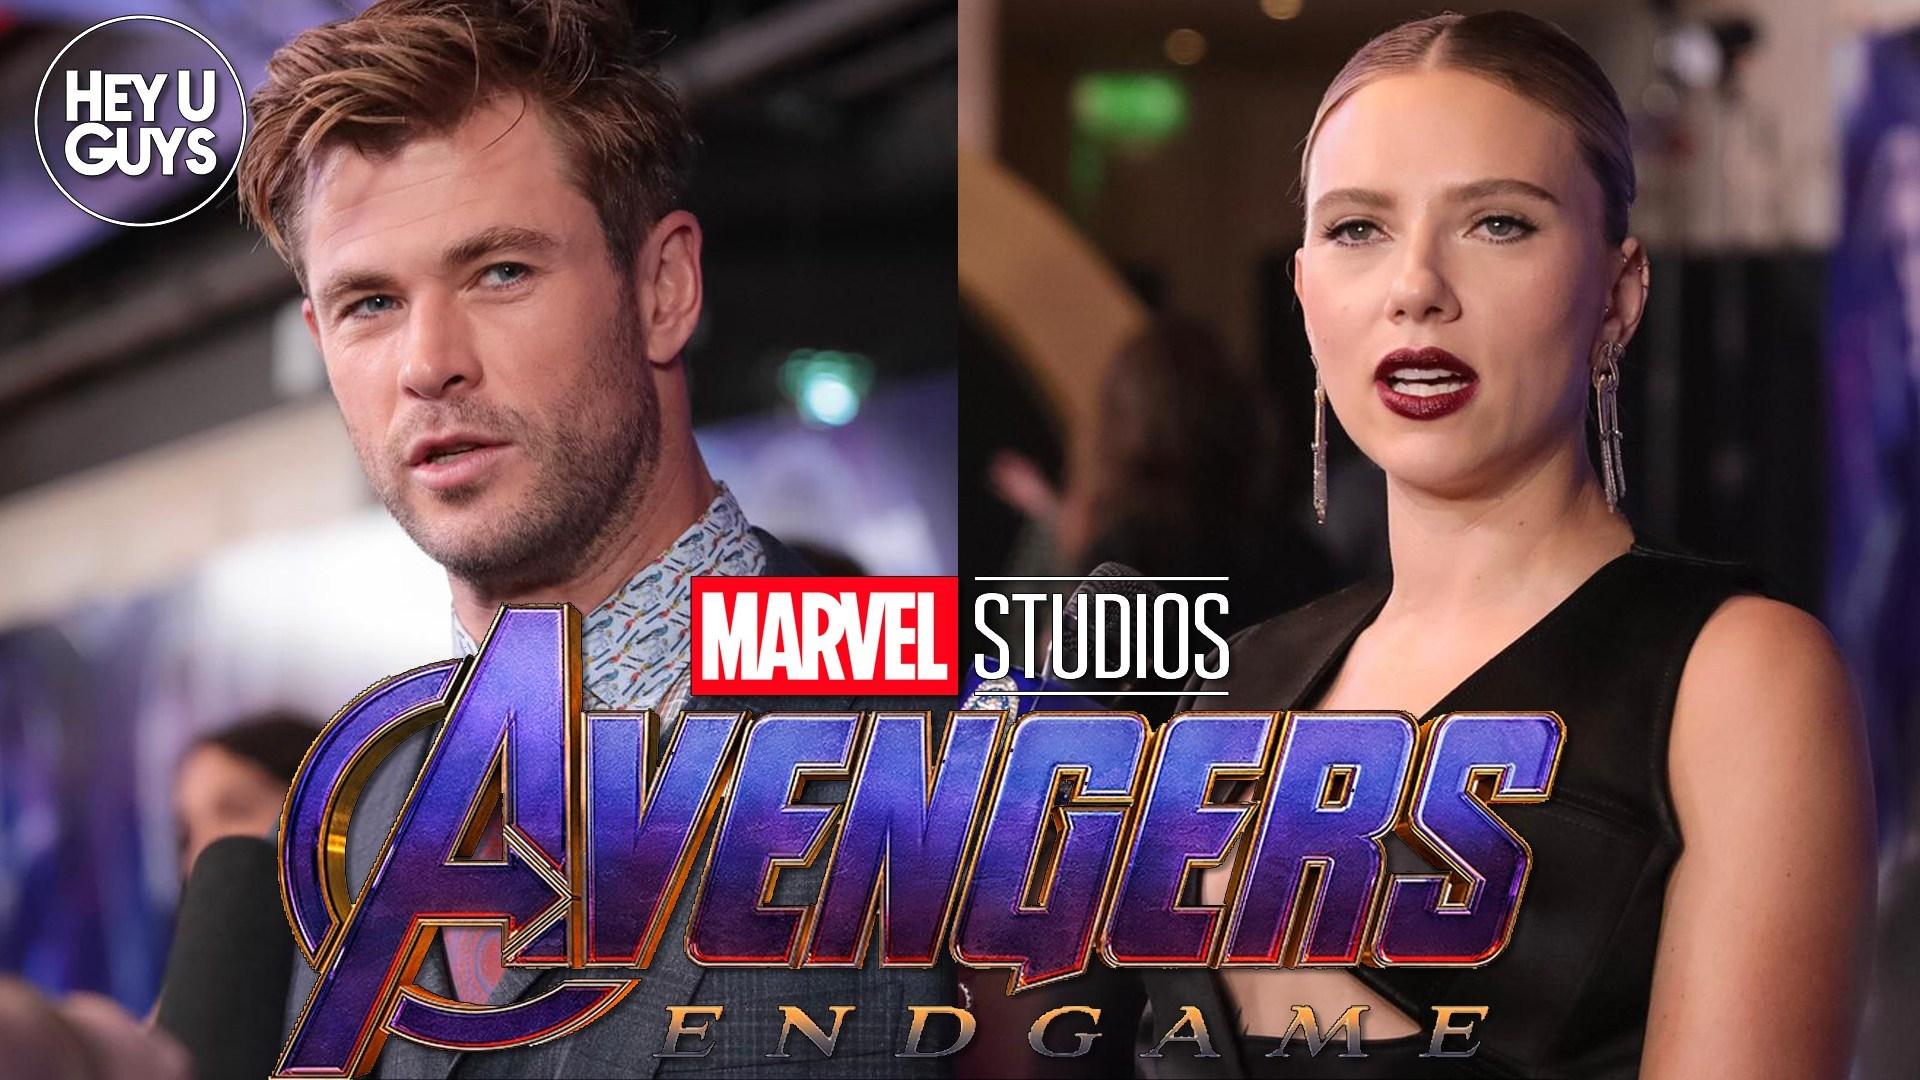 Avengers Endgame Interviews Johansson, Chris Hemsworth